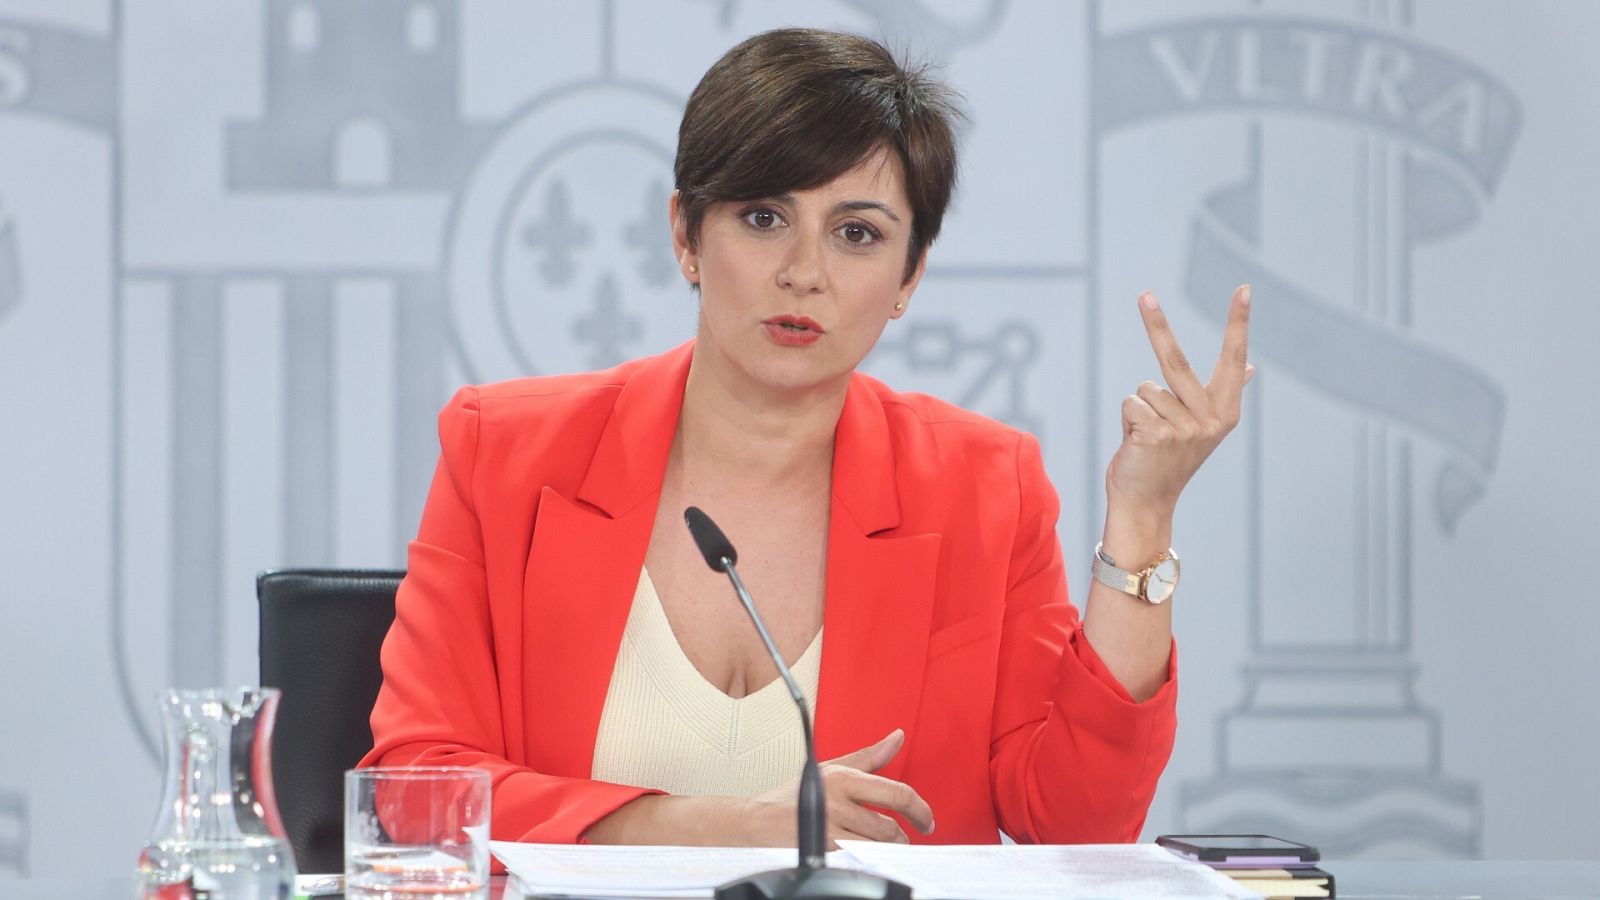 La portavoz del Gobierno y ministra de Política Territorial, Isabel Rodríguez